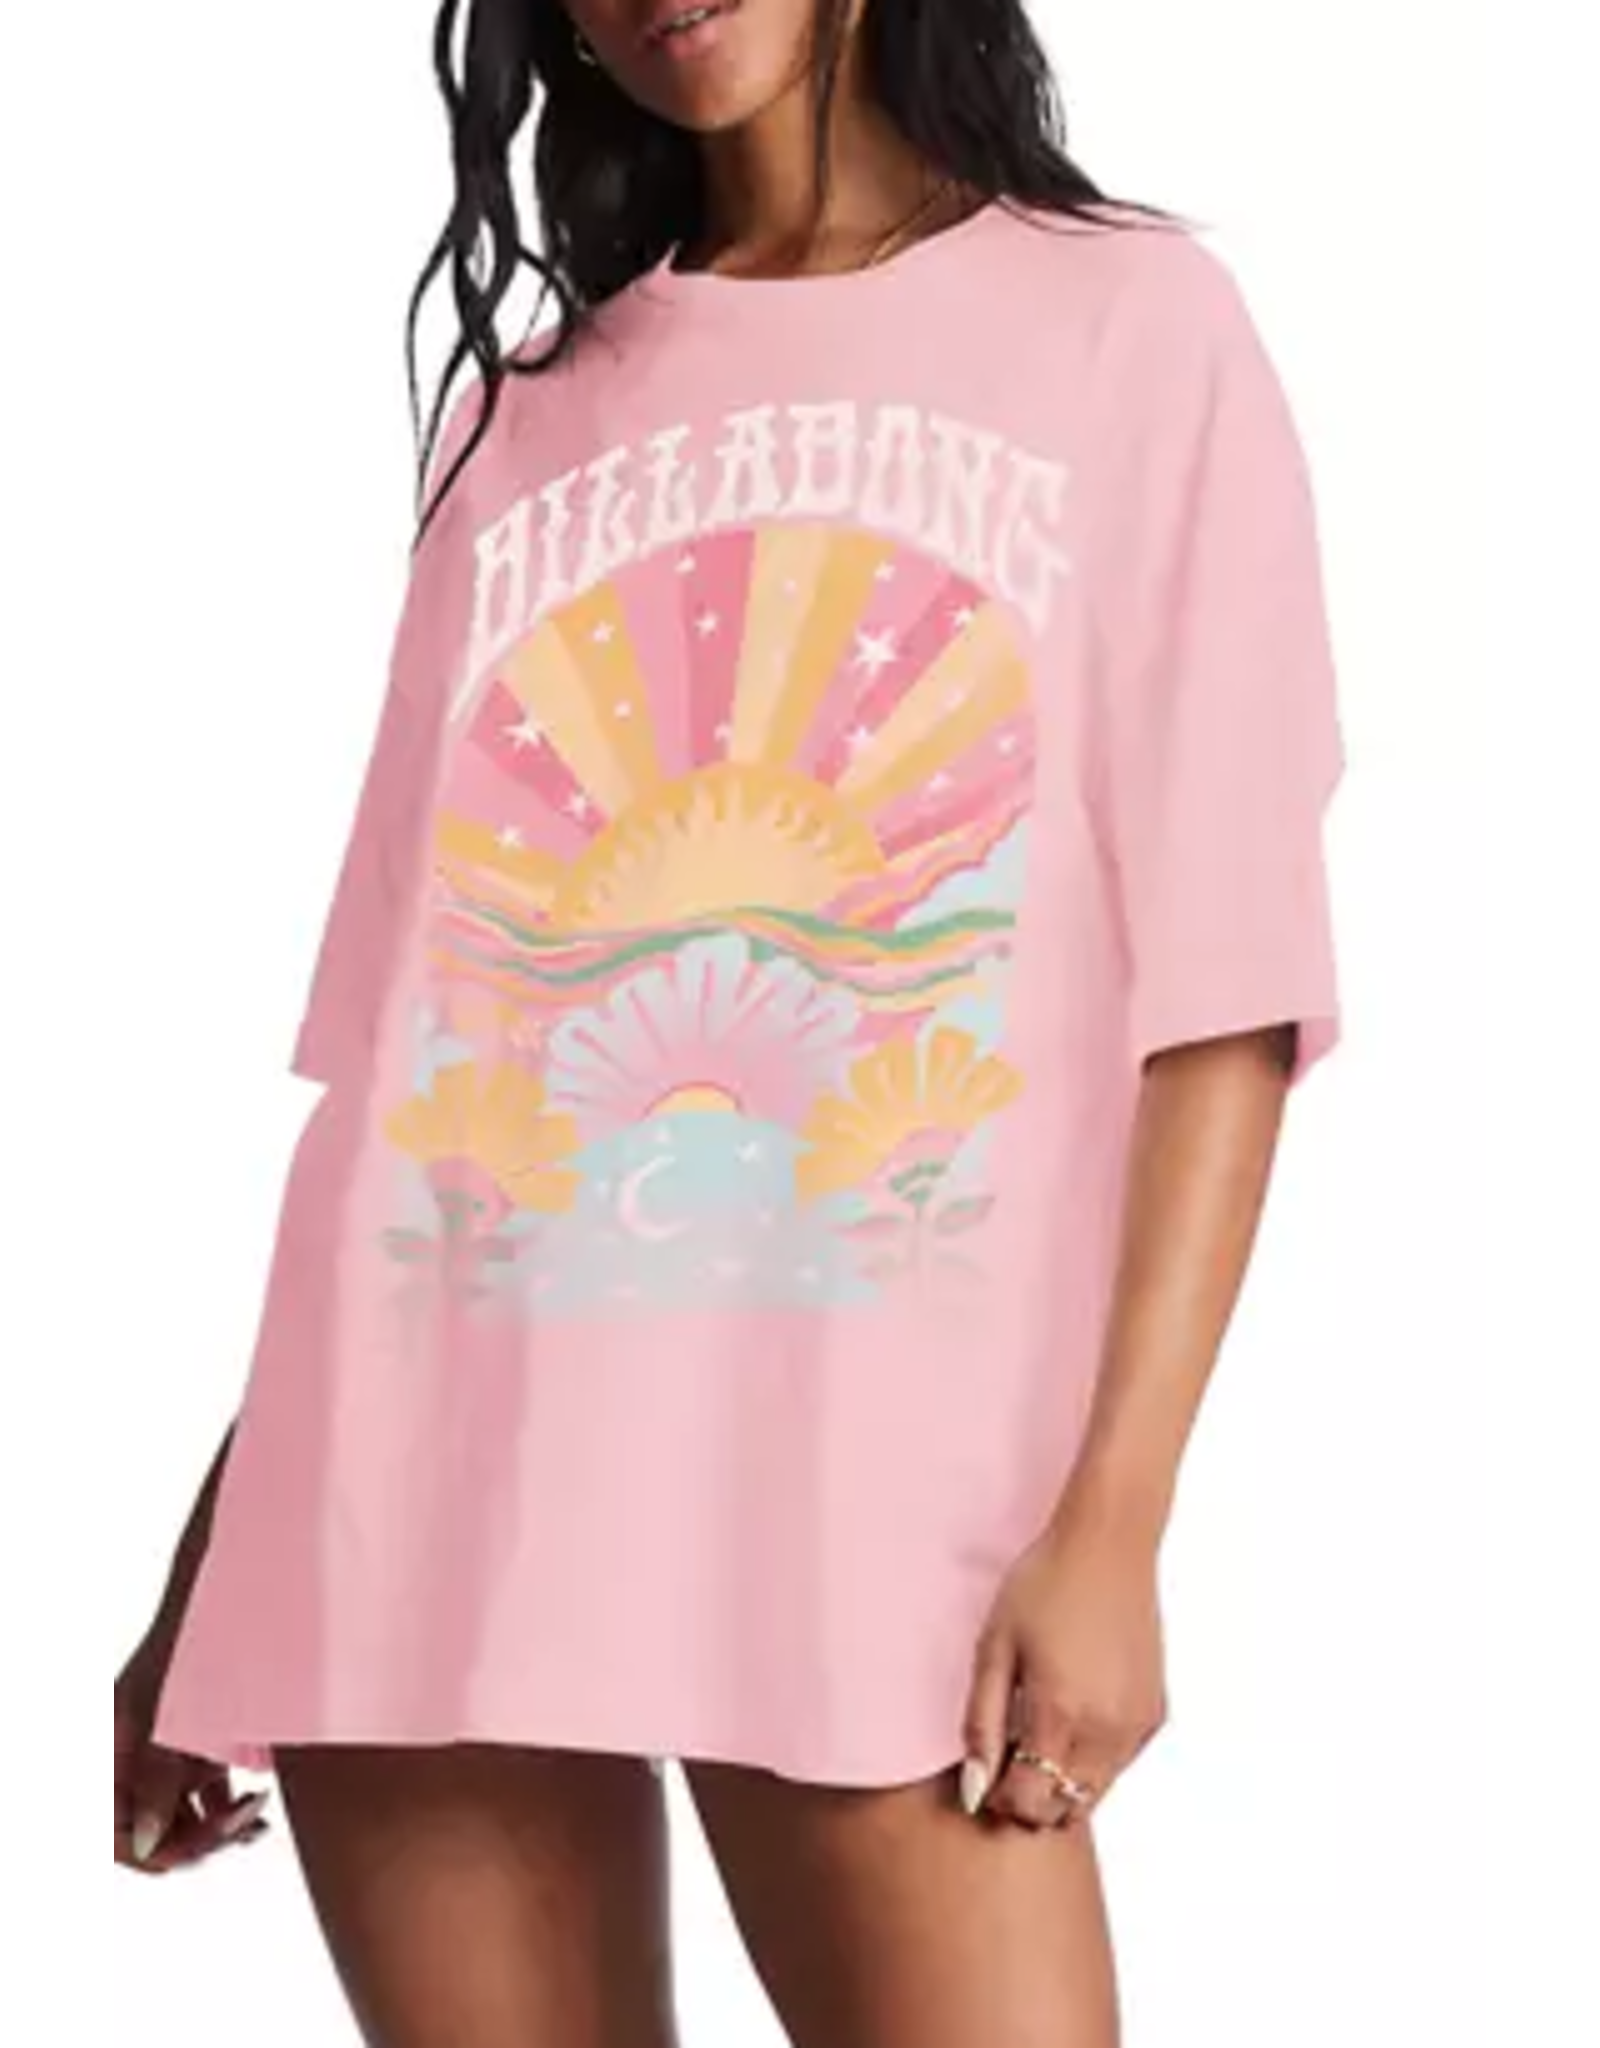 BILLABONG GIRLS Billabong Good Vibes Oversized Graphic T-Shirt